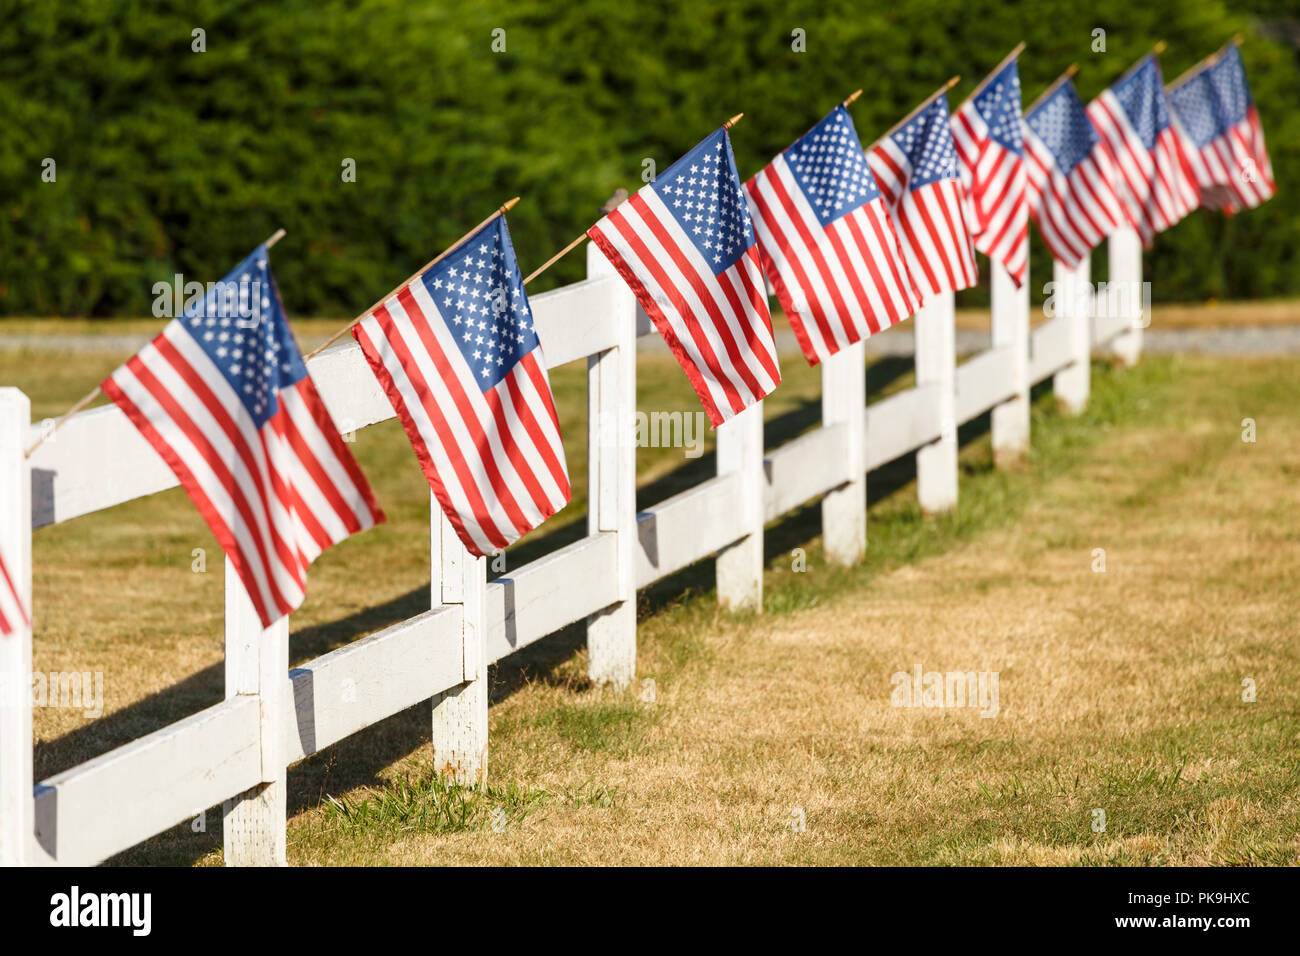 Affichage des drapeaux américains patriotiques d'ondulation sur clôture blanche. Petite ville typique Americana 4 juillet Jour de l'indépendance de décorations. Banque D'Images